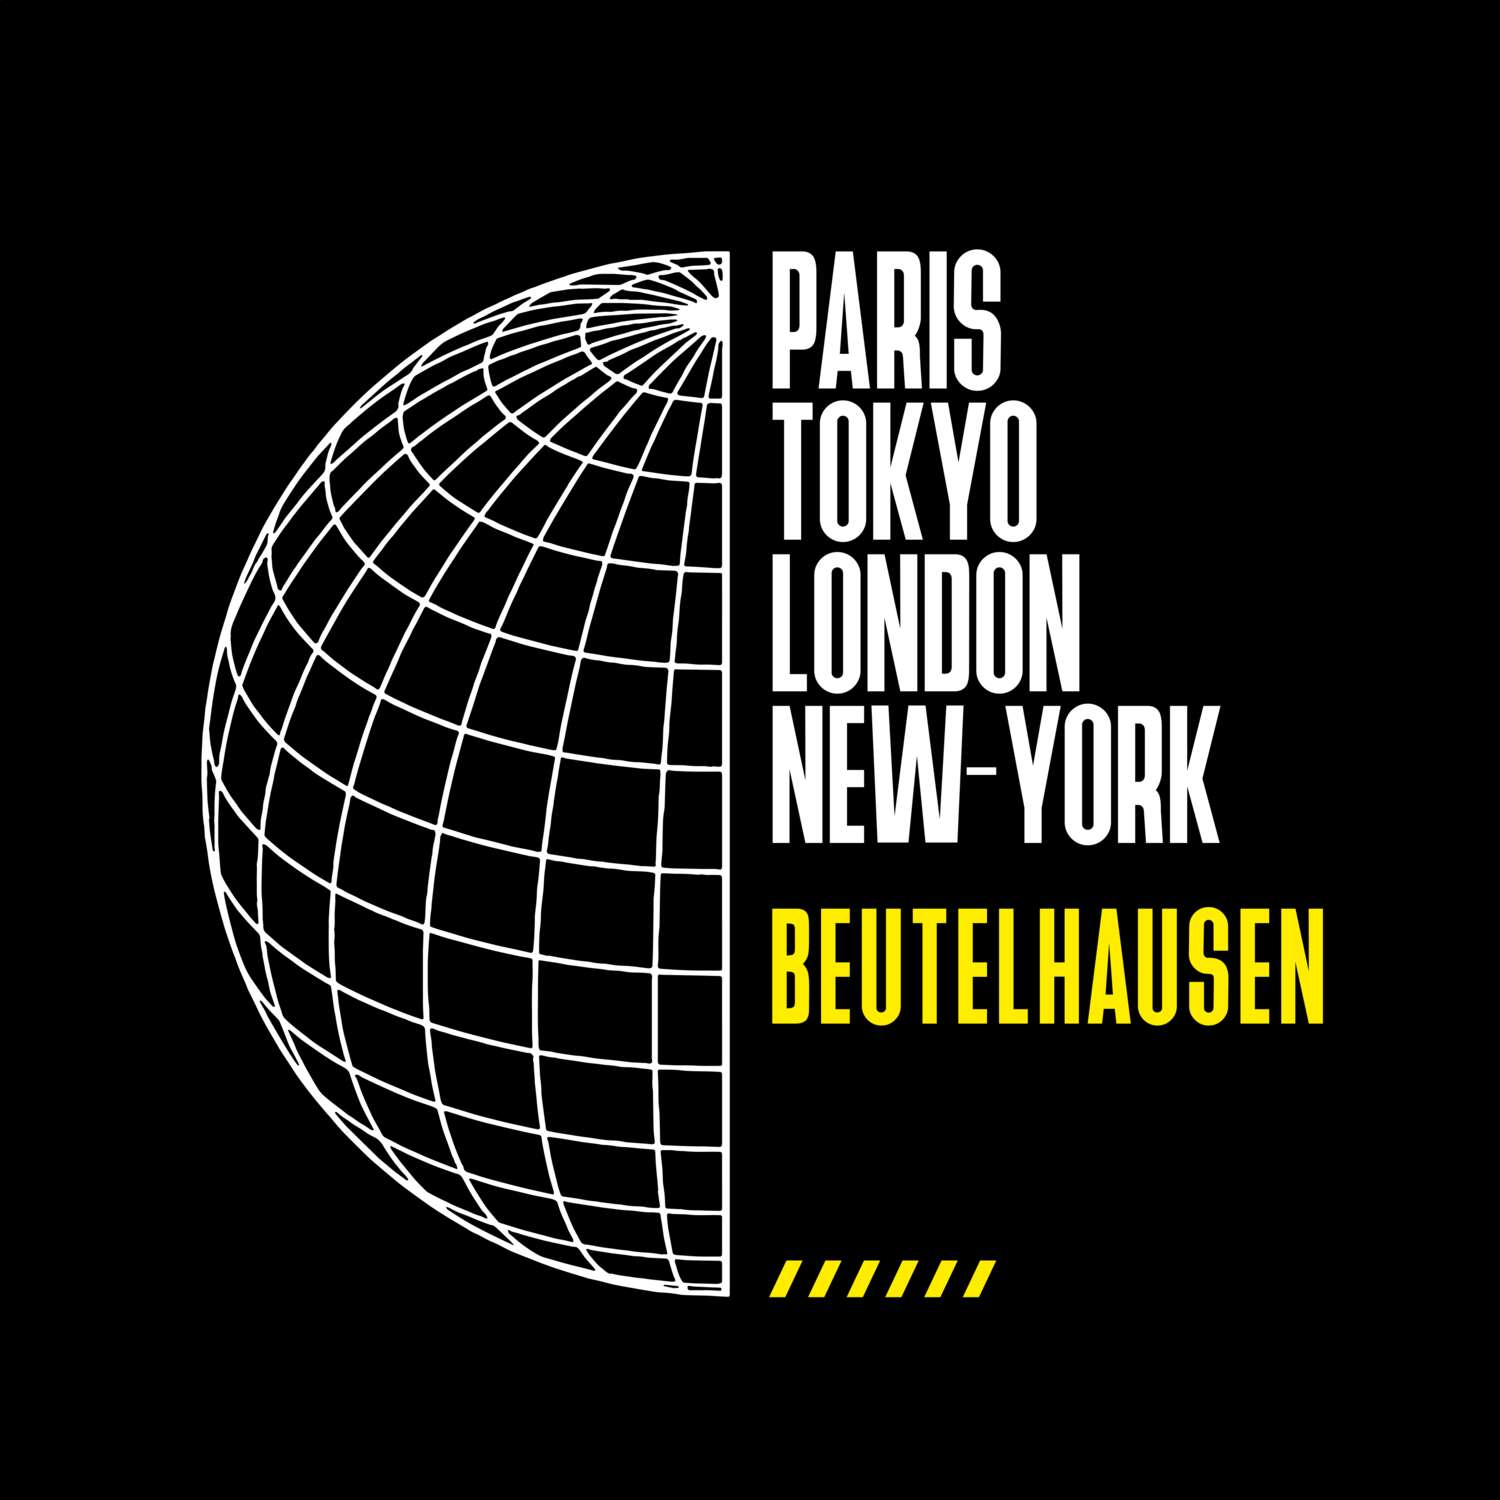 Beutelhausen T-Shirt »Paris Tokyo London«